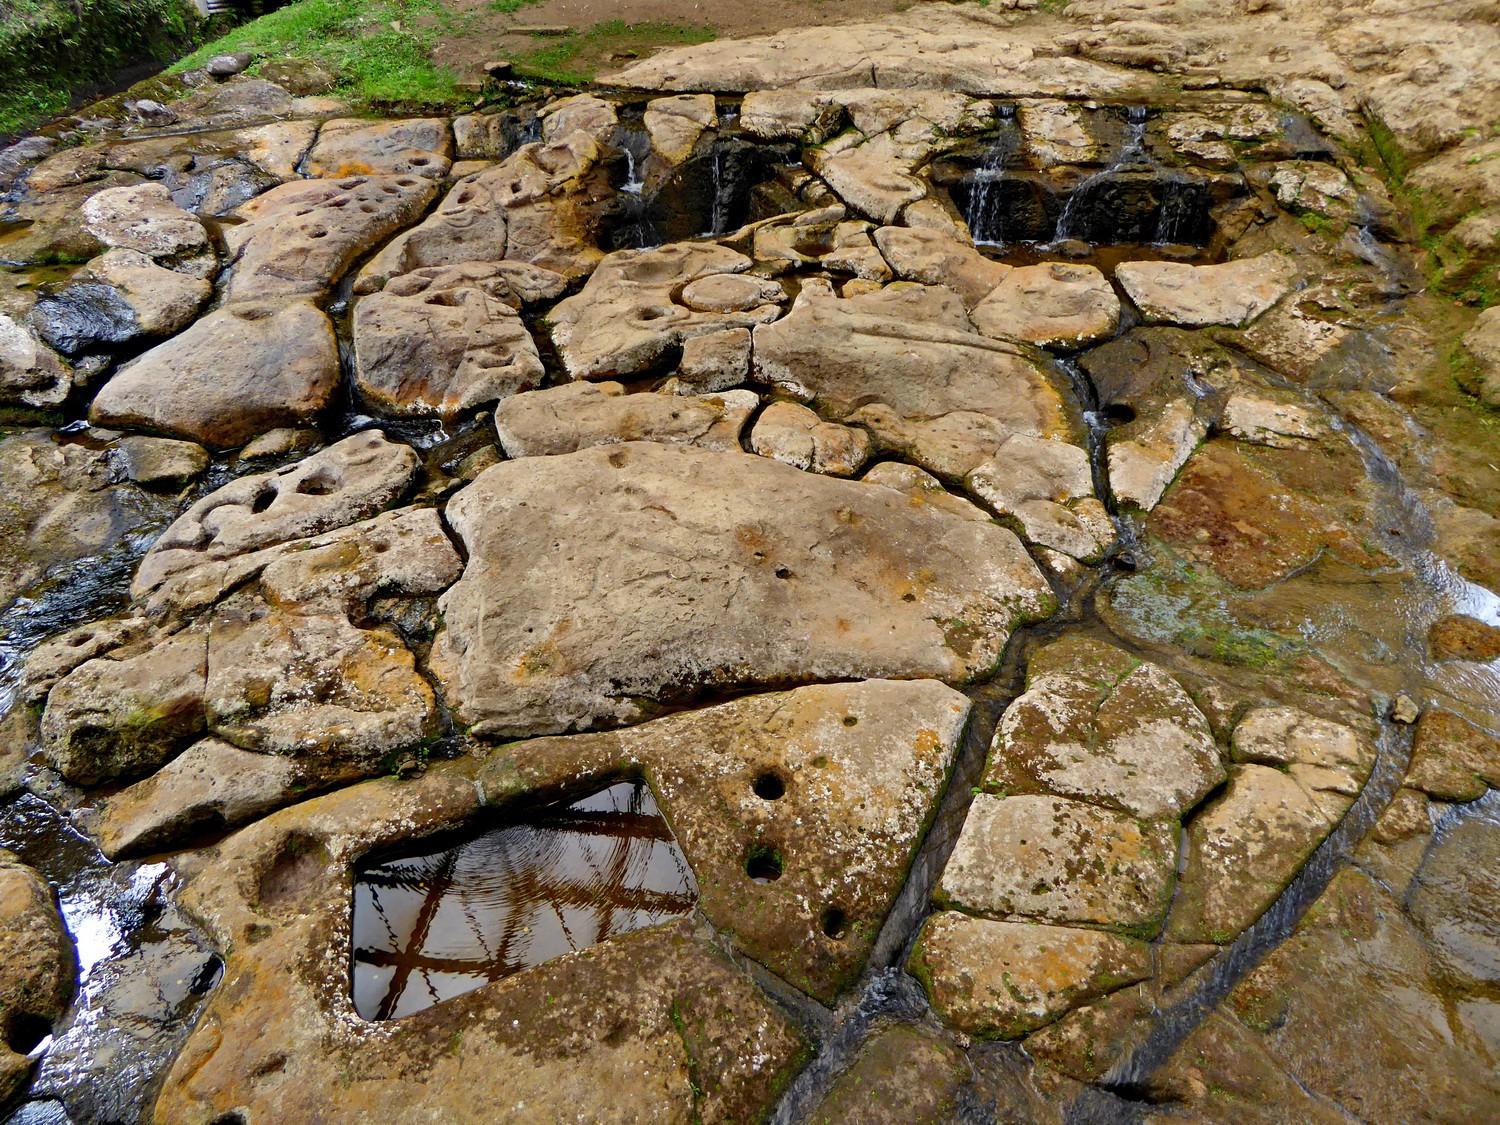 Labyrinth Fuente de Lavapas with channels and little basins